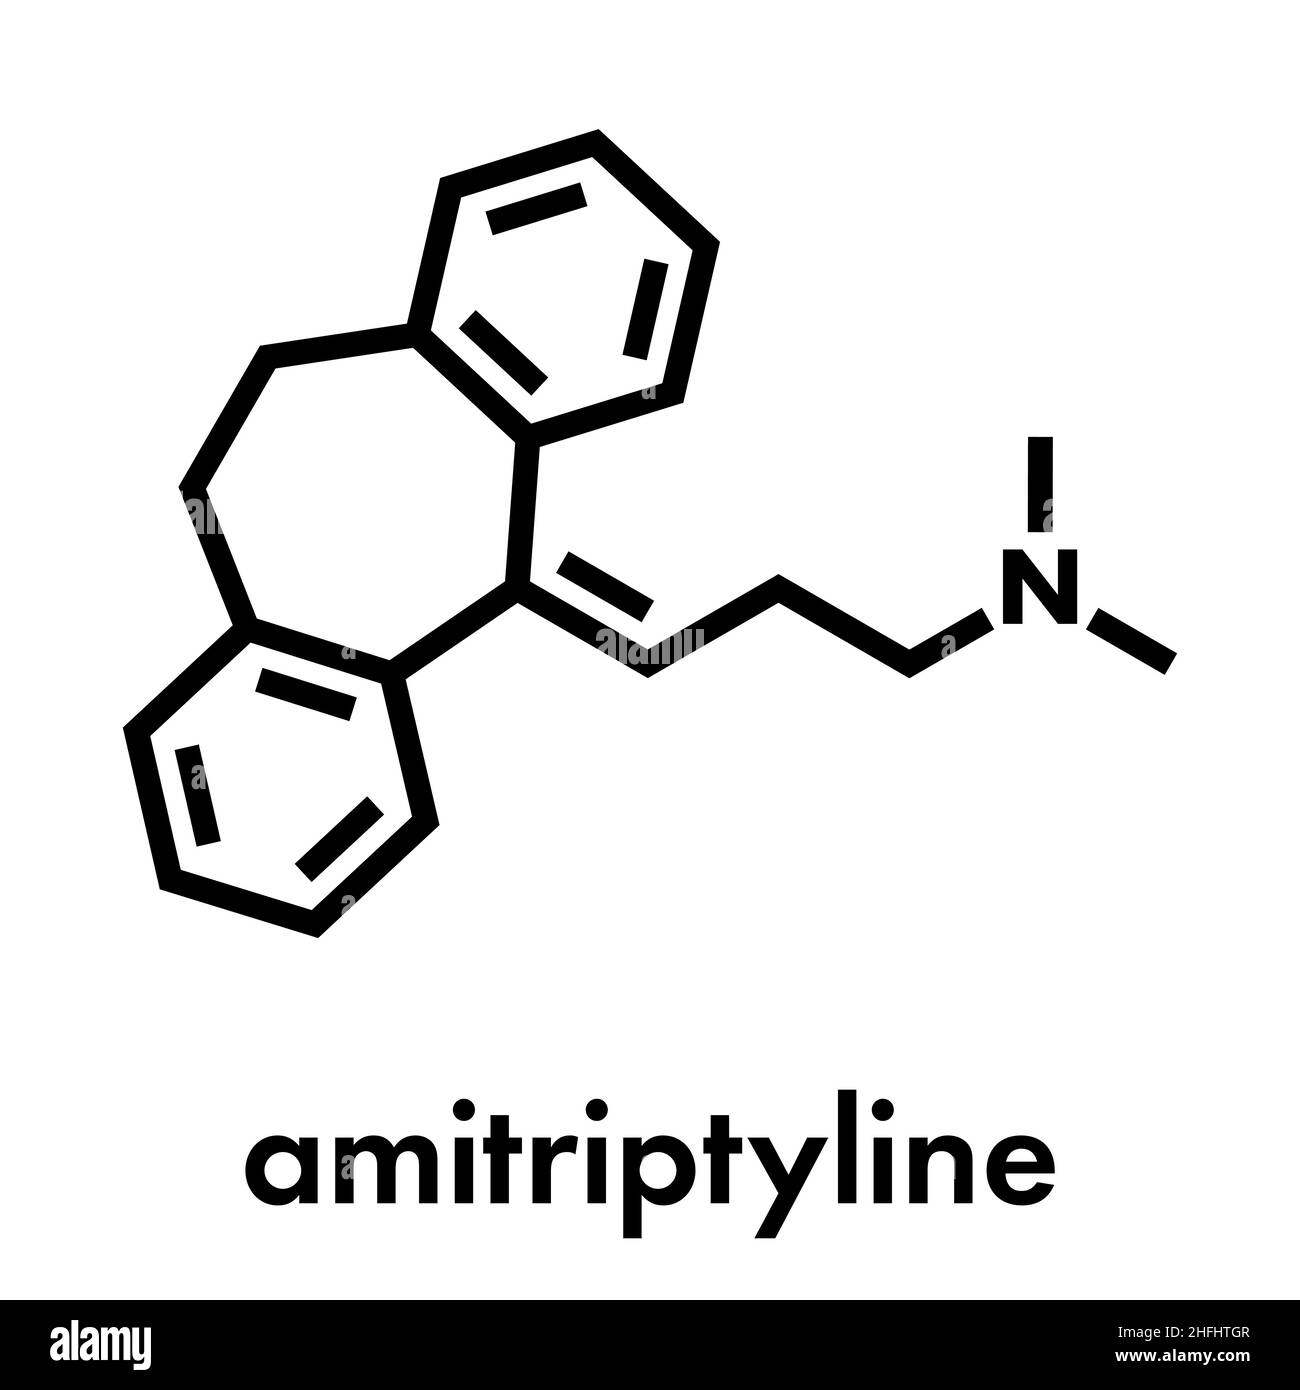 Molécula De Fármaco Antidepresivo Tricíclico Amitriptilina Se Utiliza En El Tratamiento De La